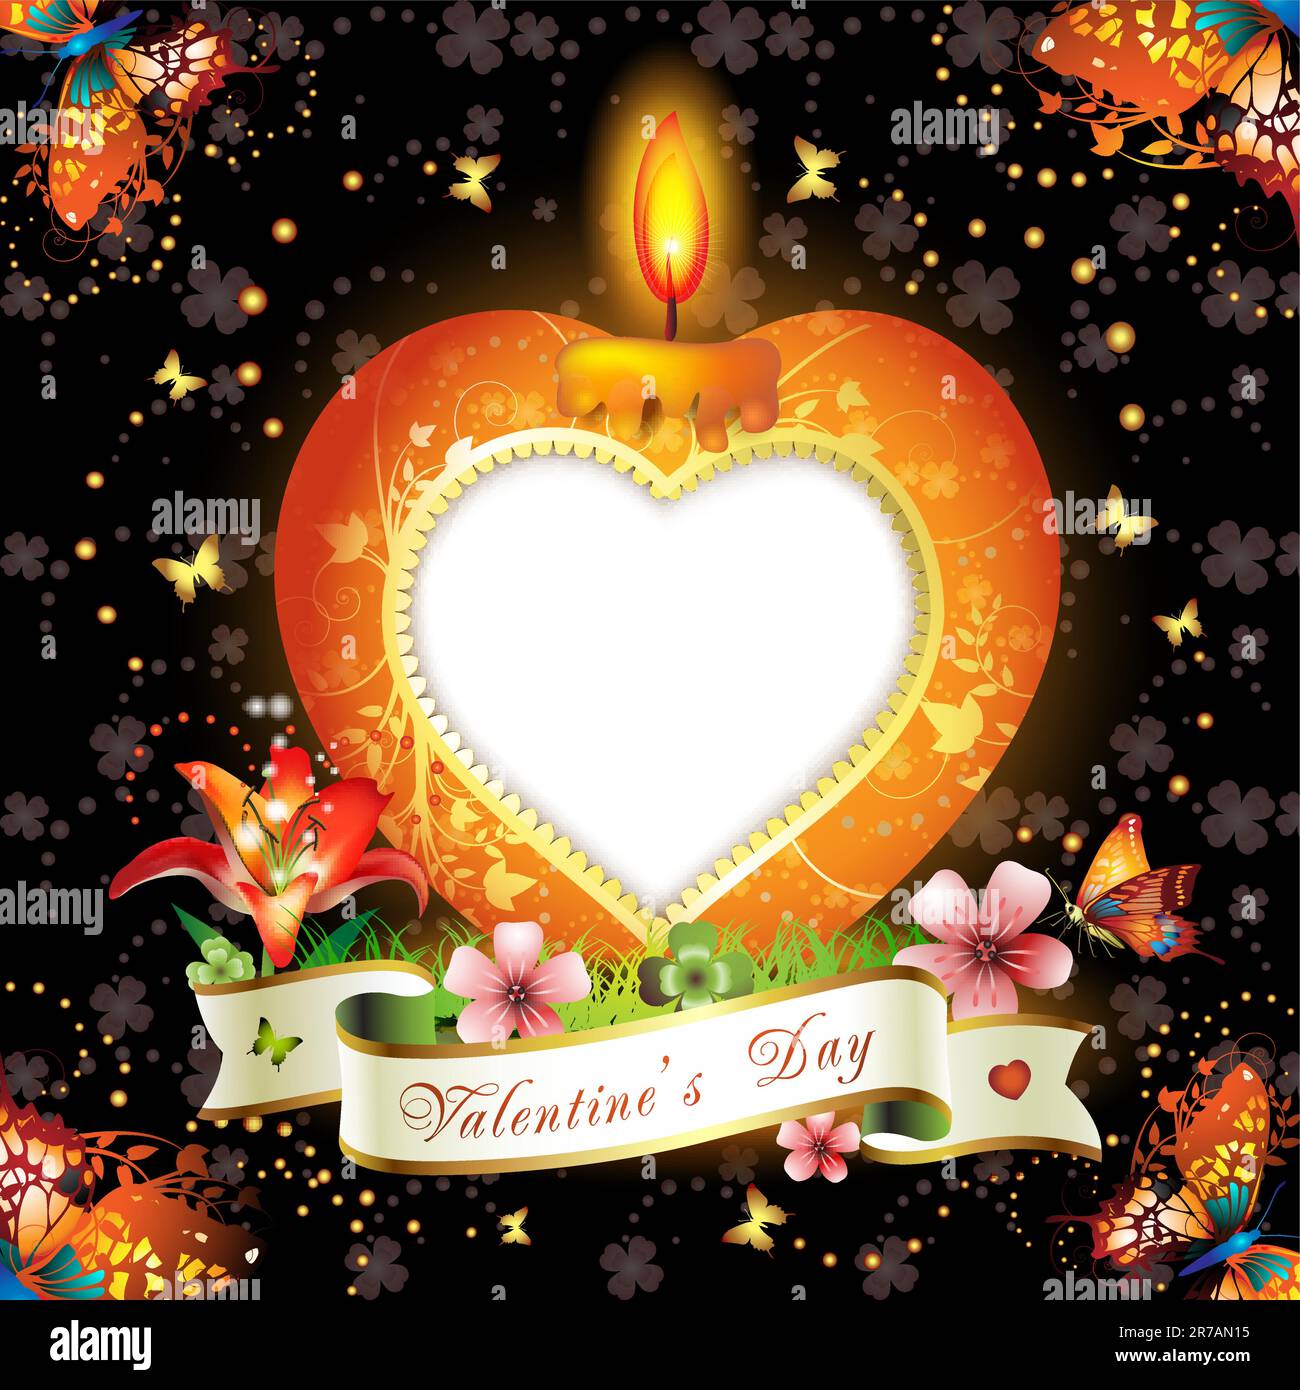 Carte de Saint-Valentin. Bougie élégante rouge en forme de coeur, décorations dorées, fleurs, ruban et espace pour le texte Illustration de Vecteur